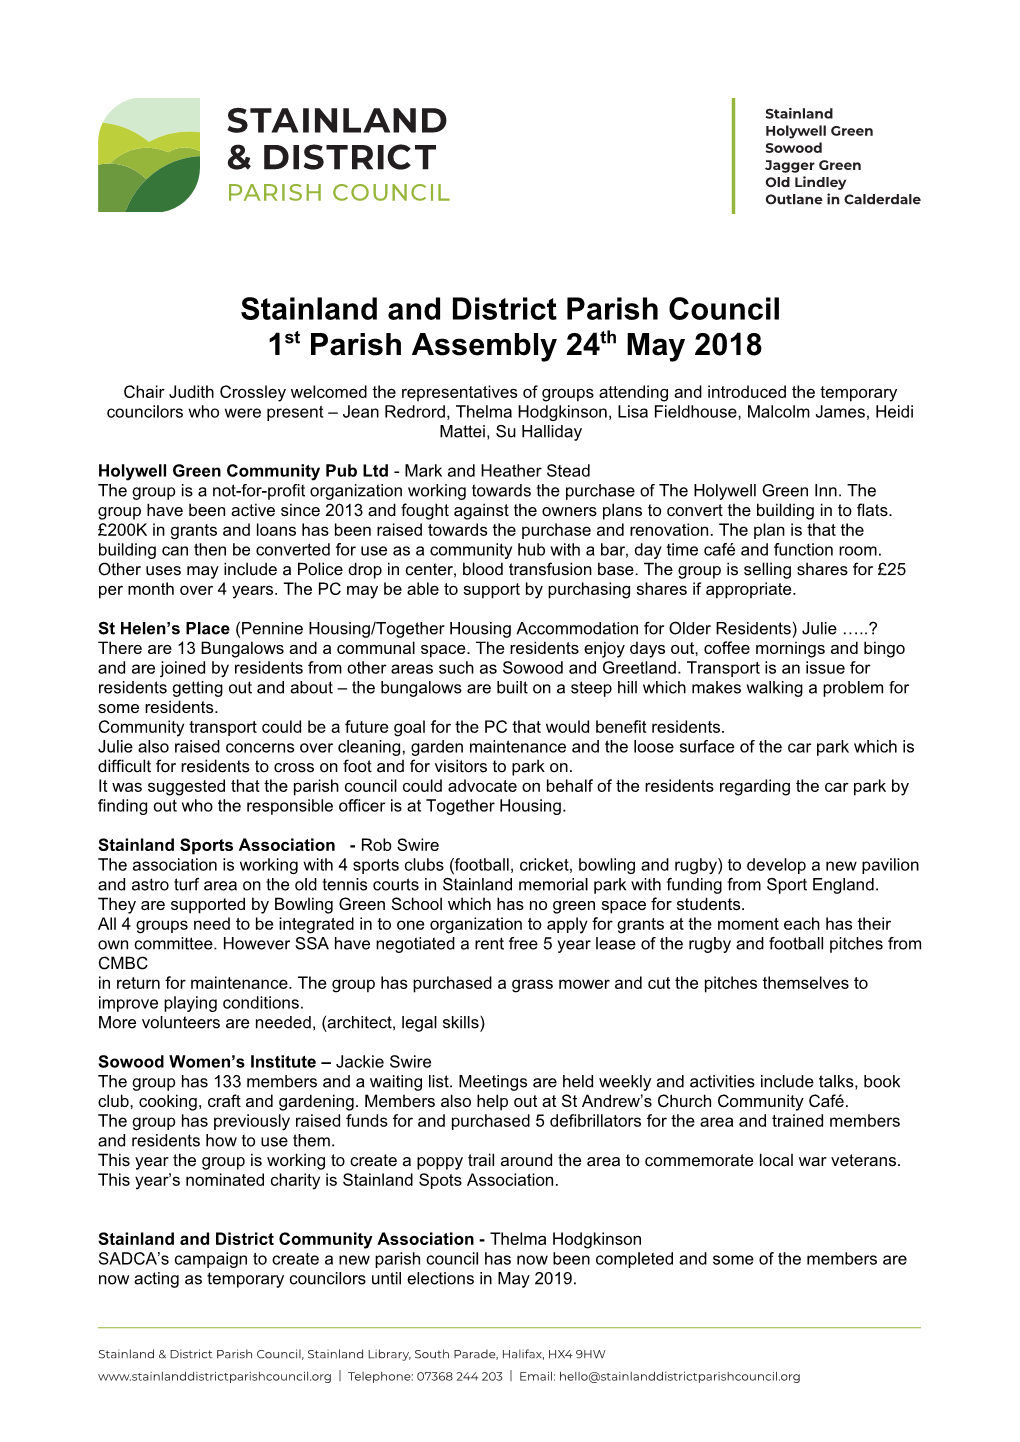 Stainland & District Parish Council